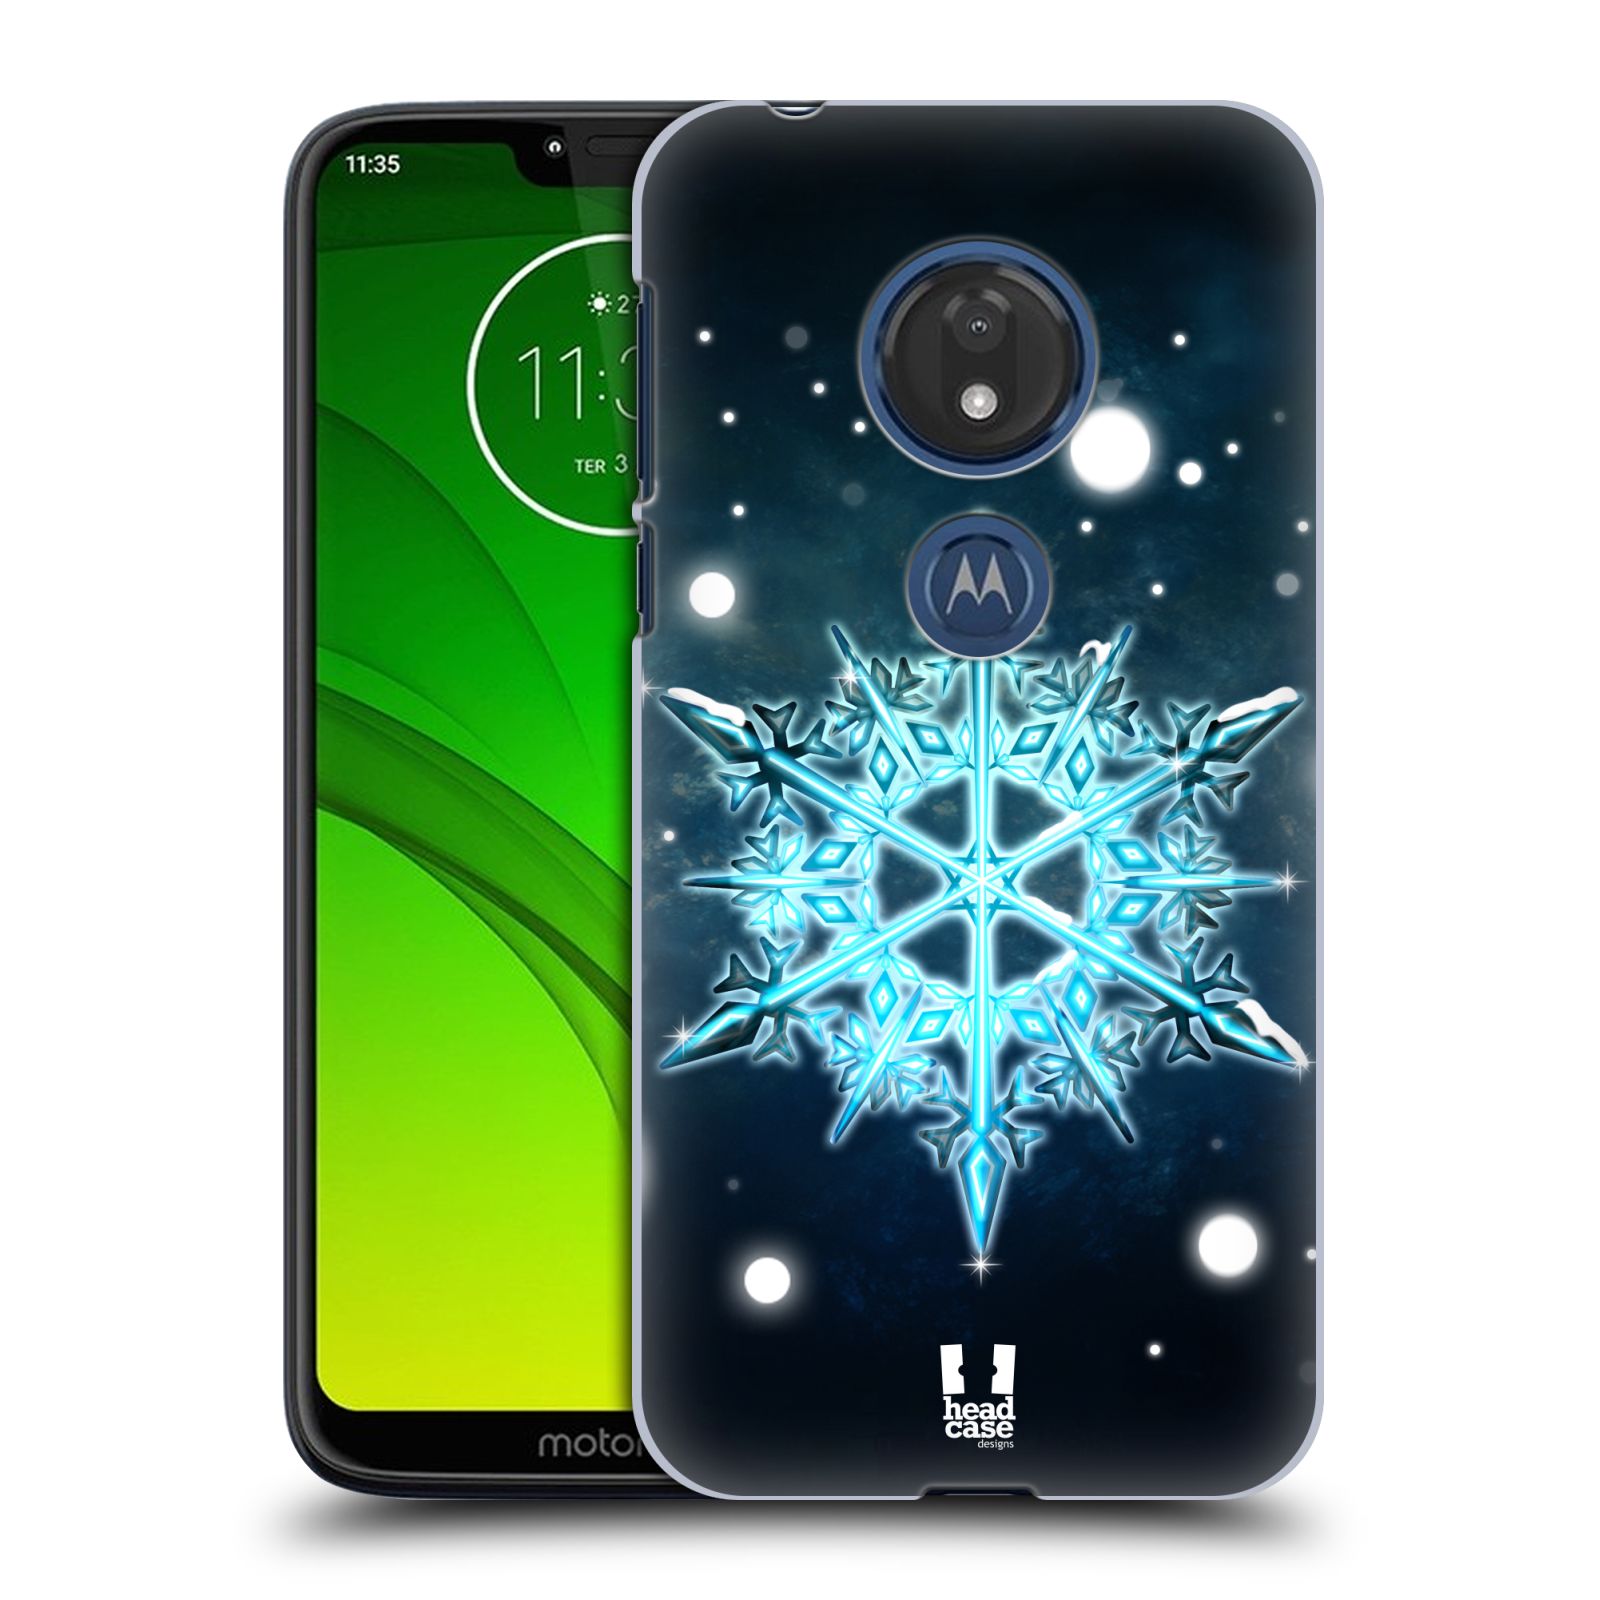 Pouzdro na mobil Motorola Moto G7 Play vzor Sněžné vločky modrá tyrkys